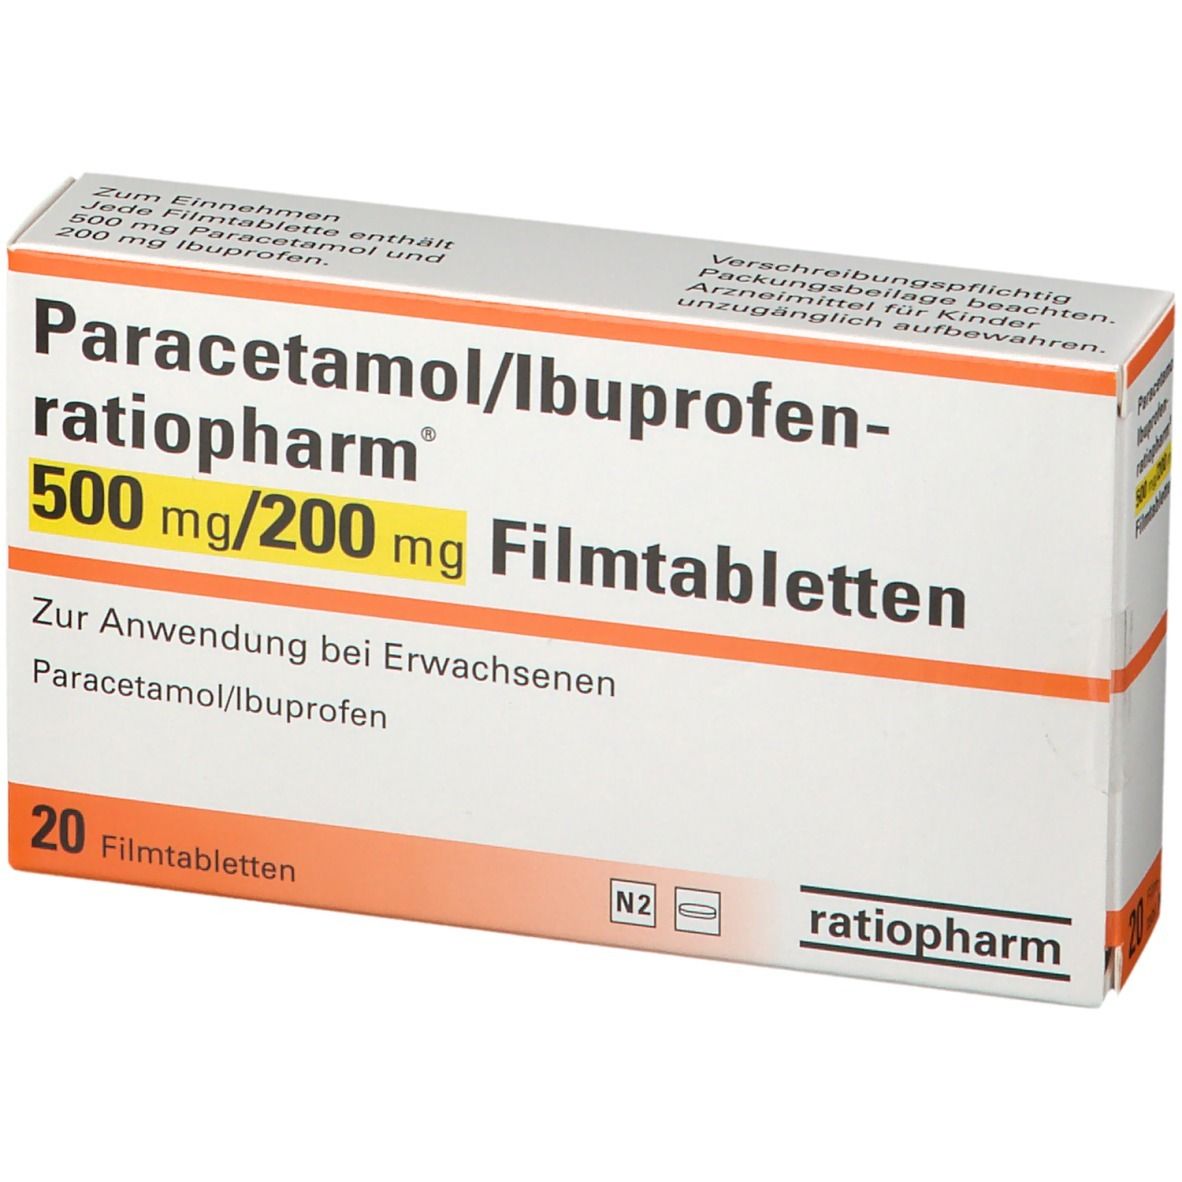 Pantoprazol und ibuprofen zusammen